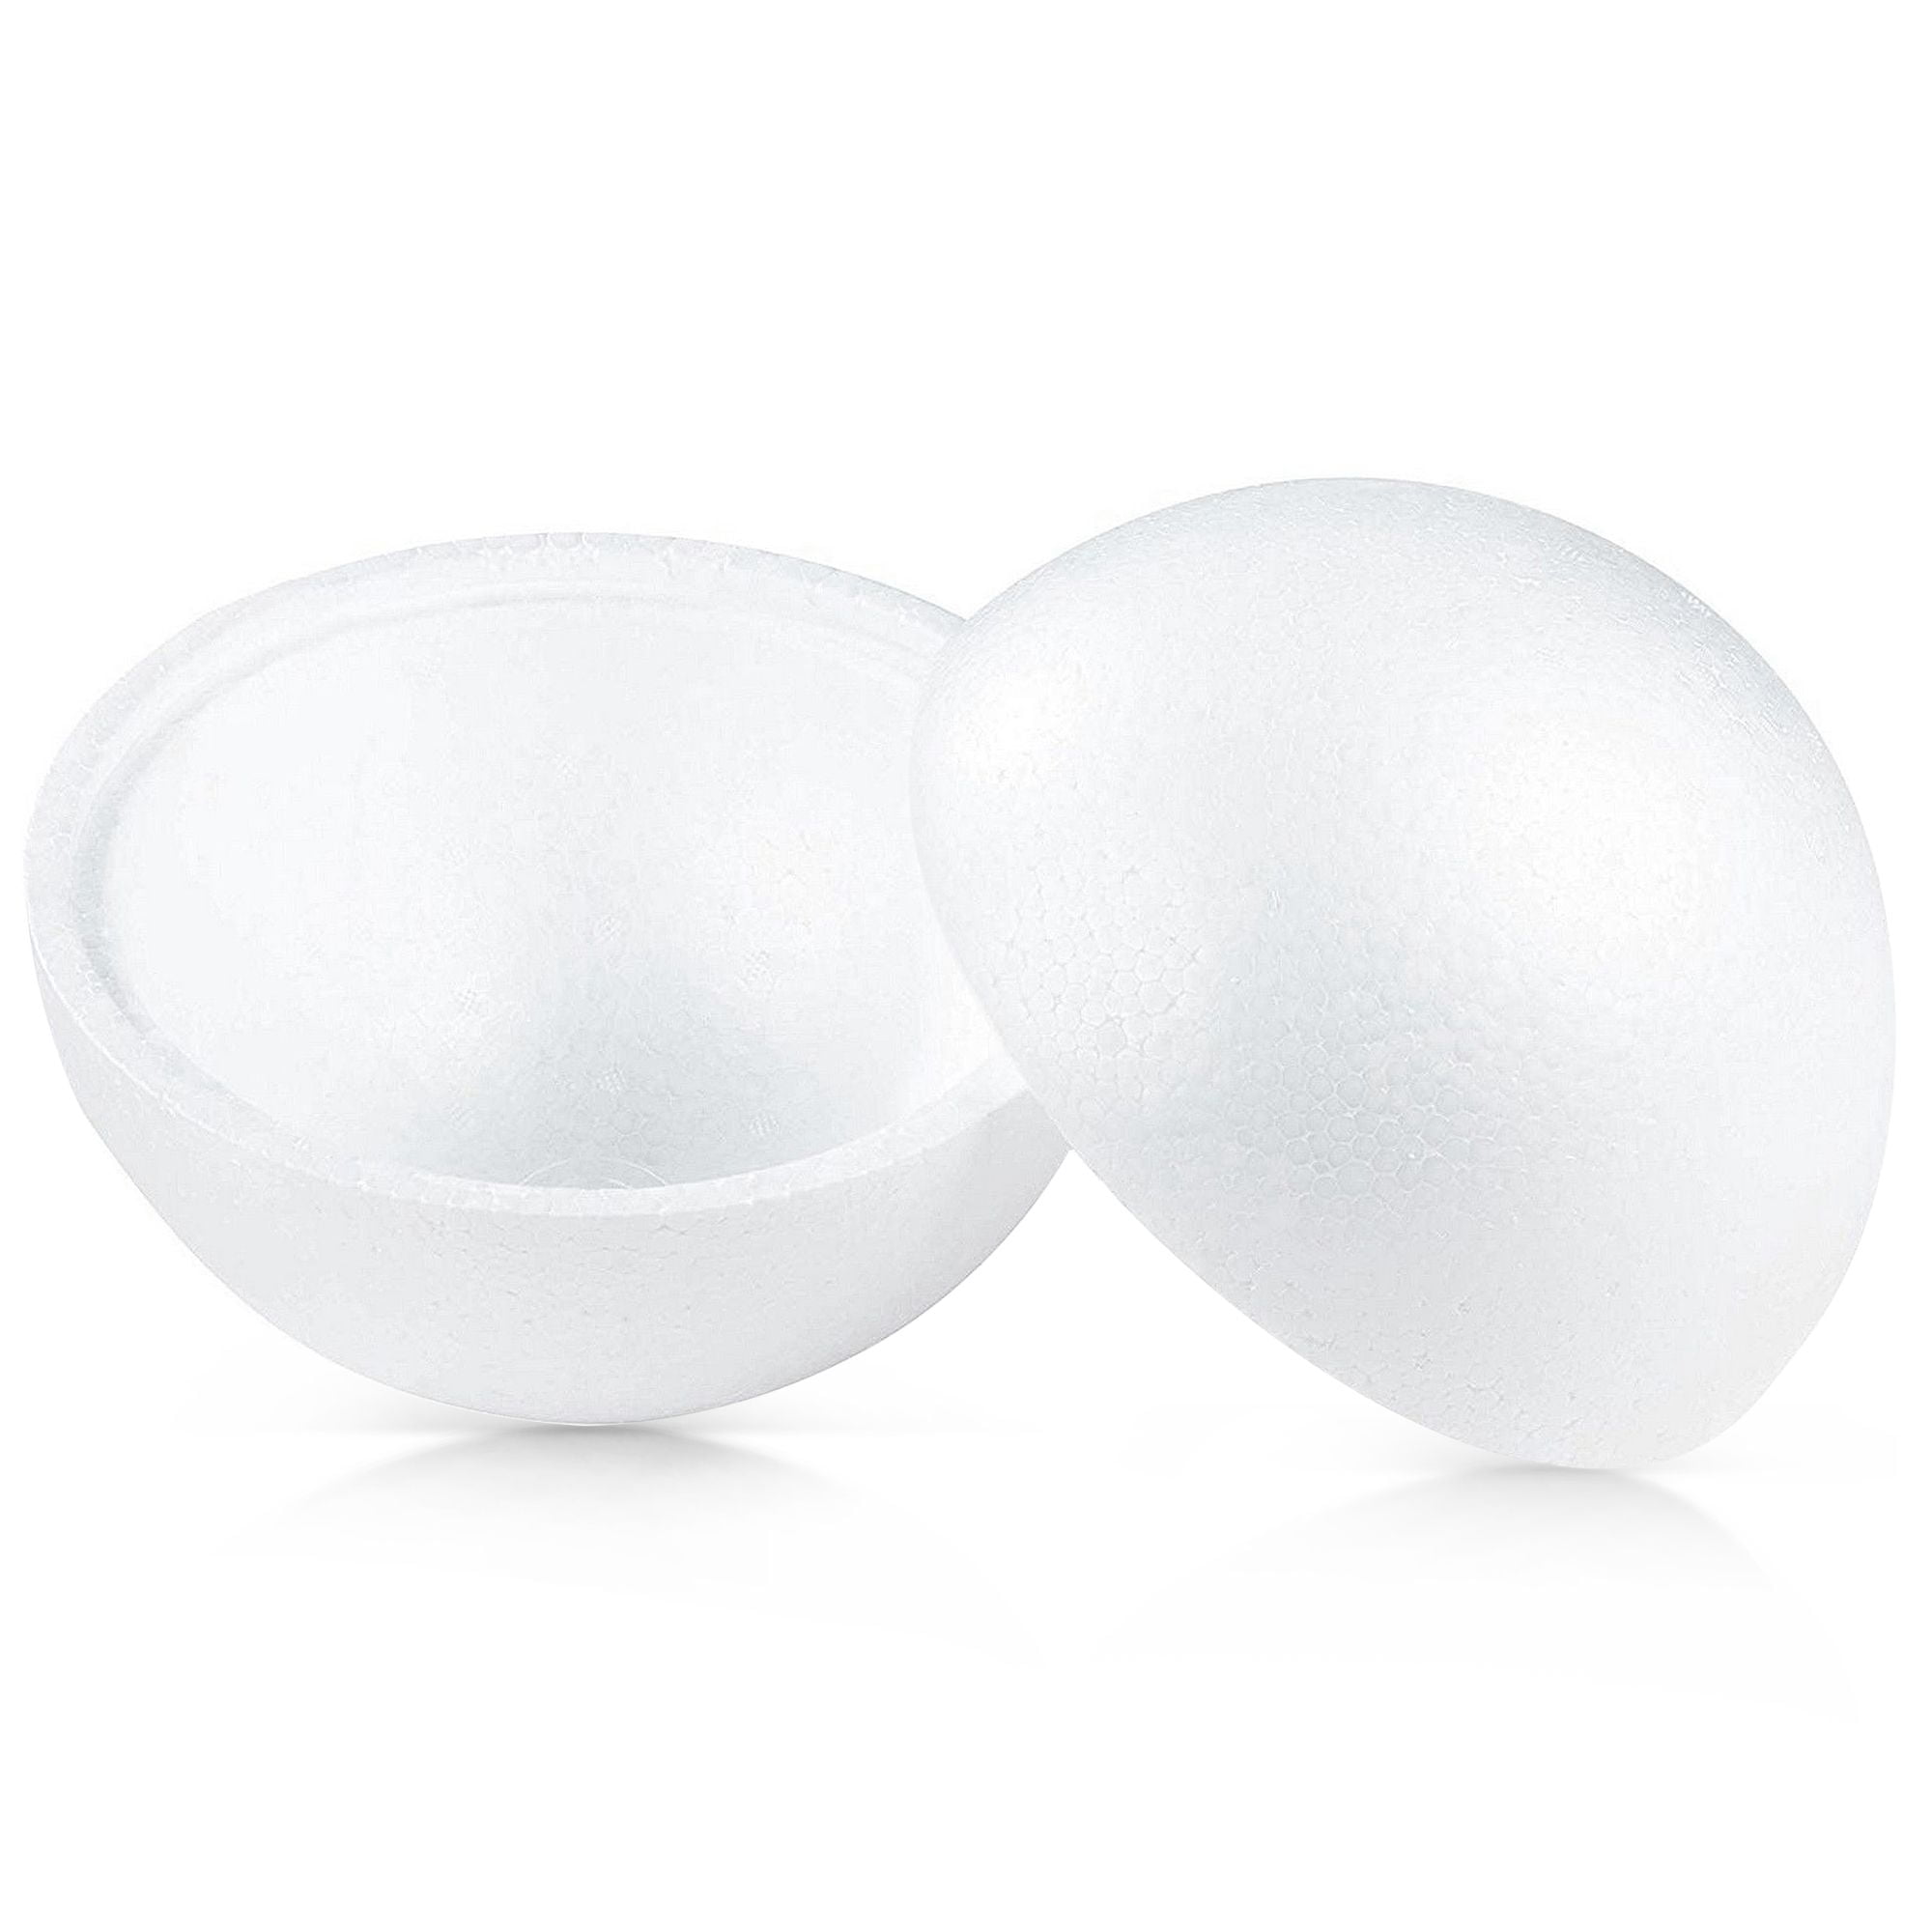 Medium Styrofoam Balls 2 Count